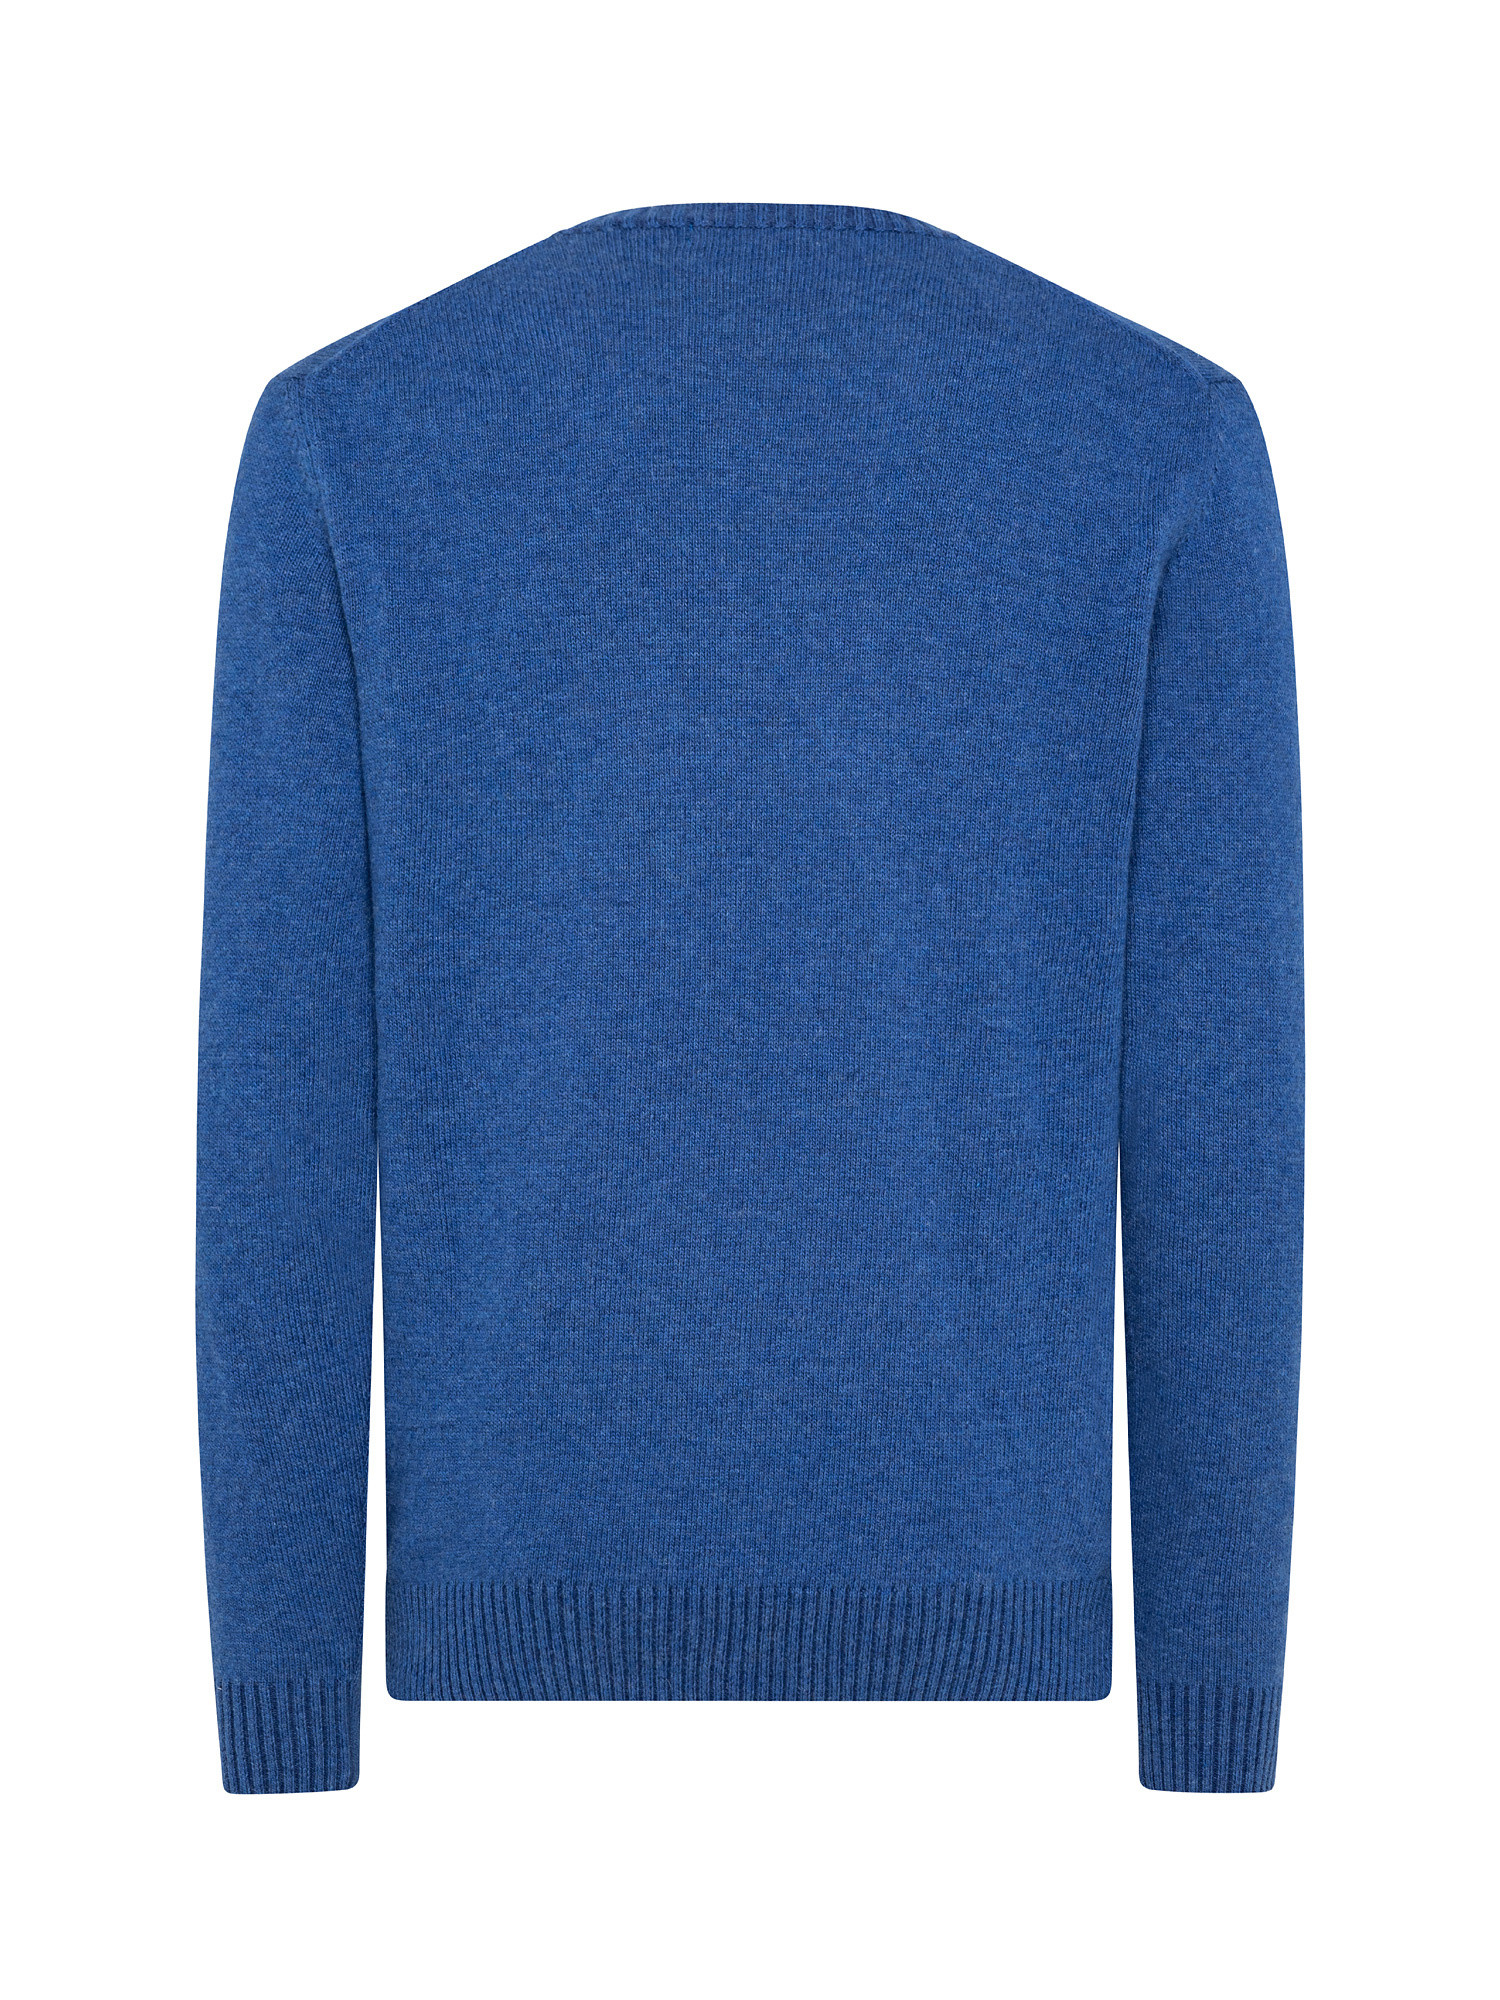 Crewneck pullover, Light Blue, large image number 1